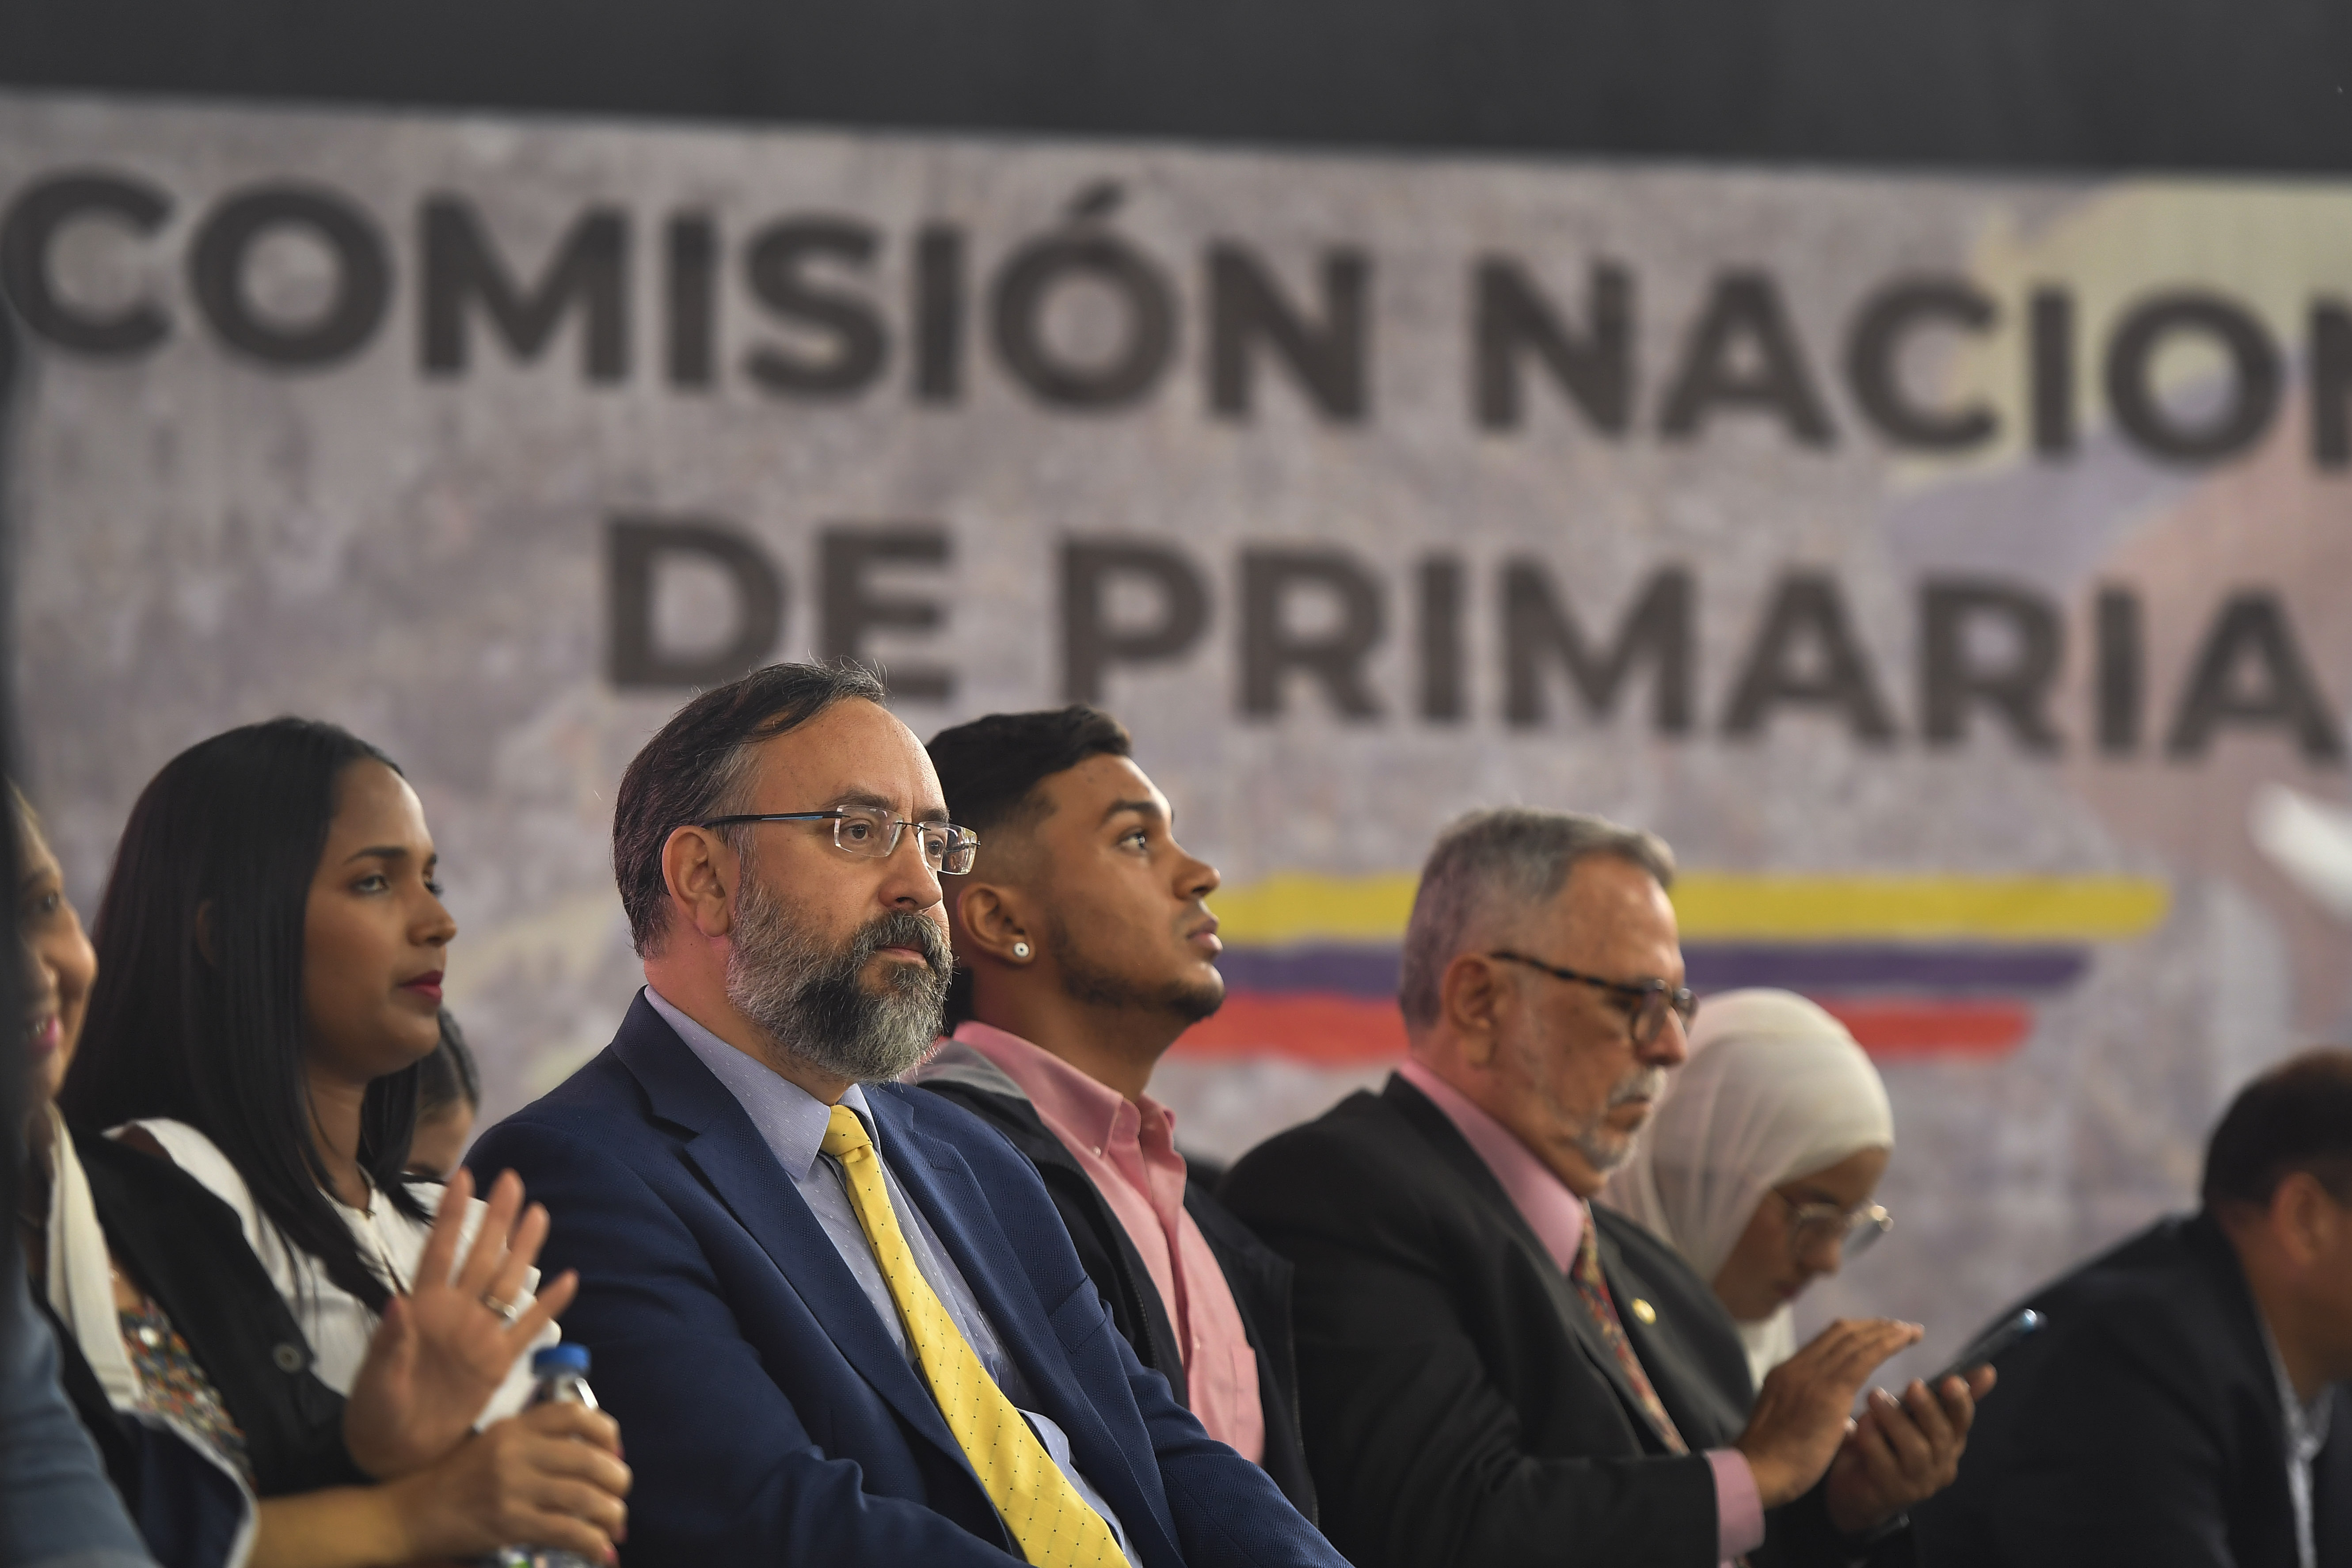 El presidente de la Comisión Nacional de Primarias, Jesús María Casal, asiste a un evento para anunciar la fecha de las elecciones primarias (AP Foto/Matias Delacroix/Archivo)